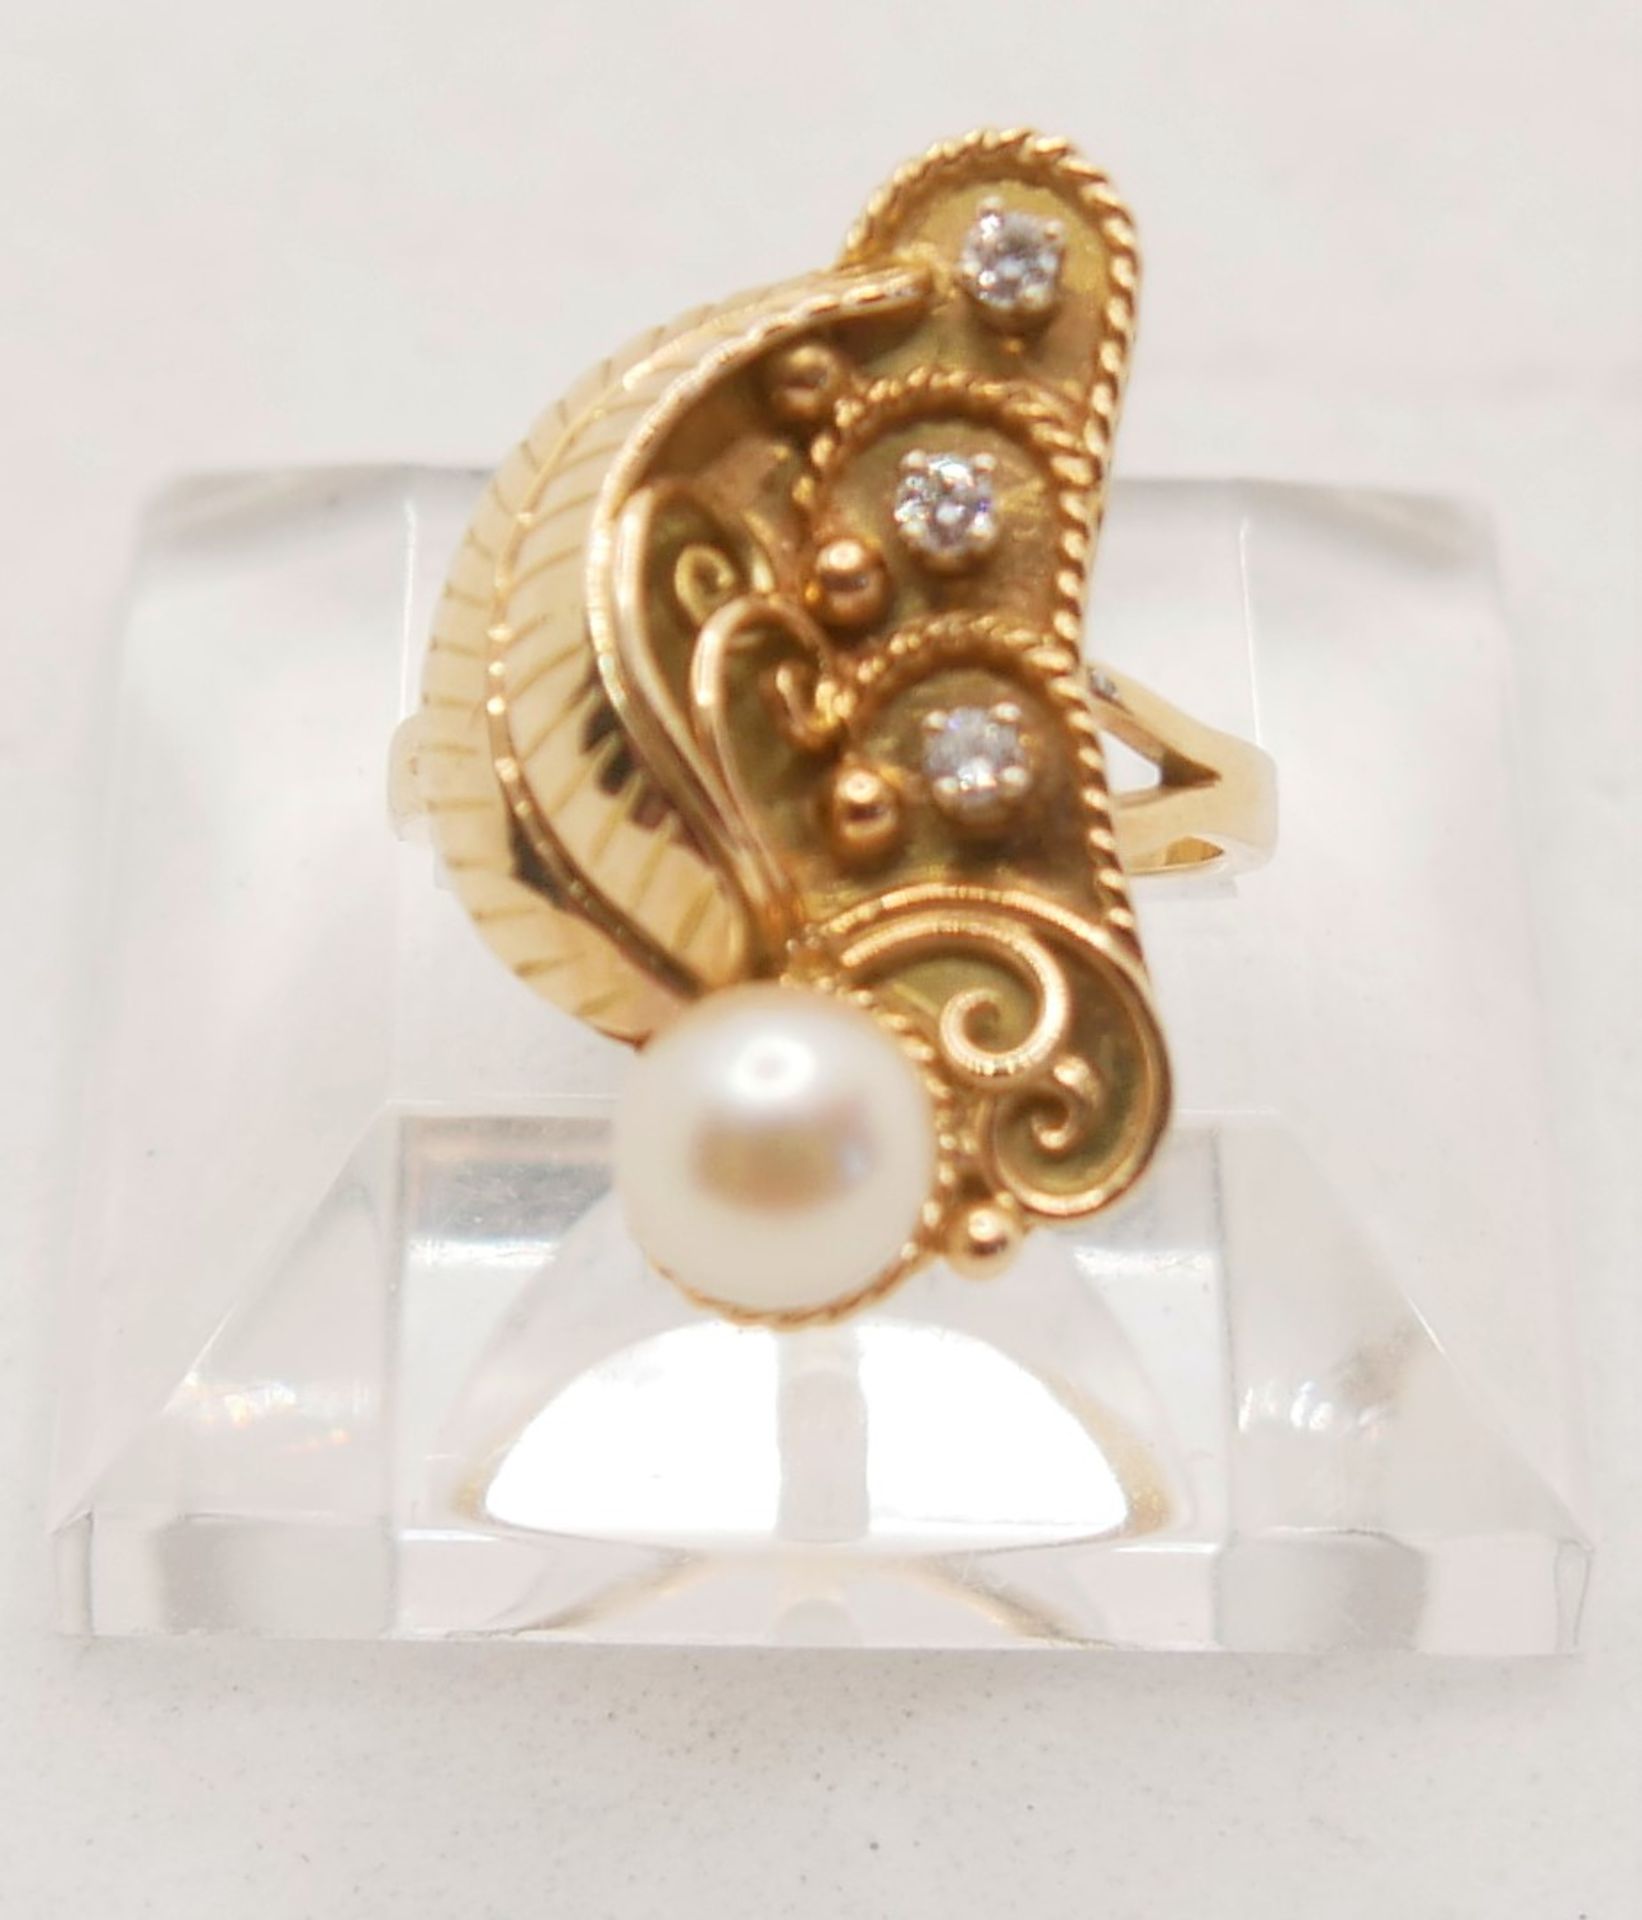 Damenring, 585er Gelbgold, besetzt mit einer Perle und 3 kleine Diamanten. Ringgröße 51